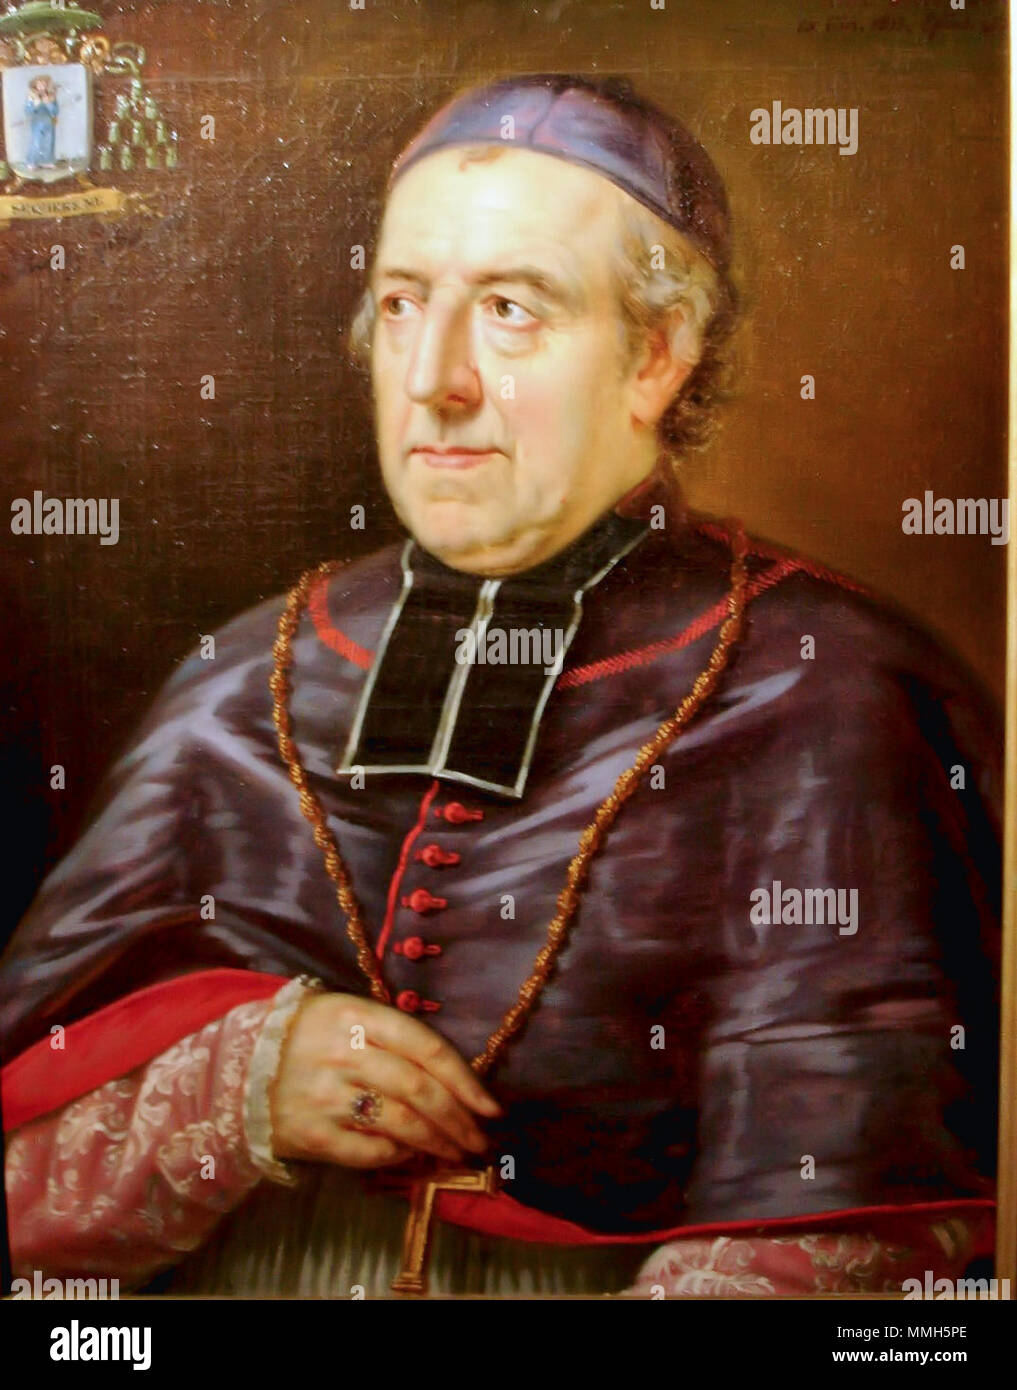 Mgr. François-René Boussen, episcopus Brugensis; Canon. ad Honorem eccl. cath. Gandav. 11 18de eeuw bischopsportret Stock Photo